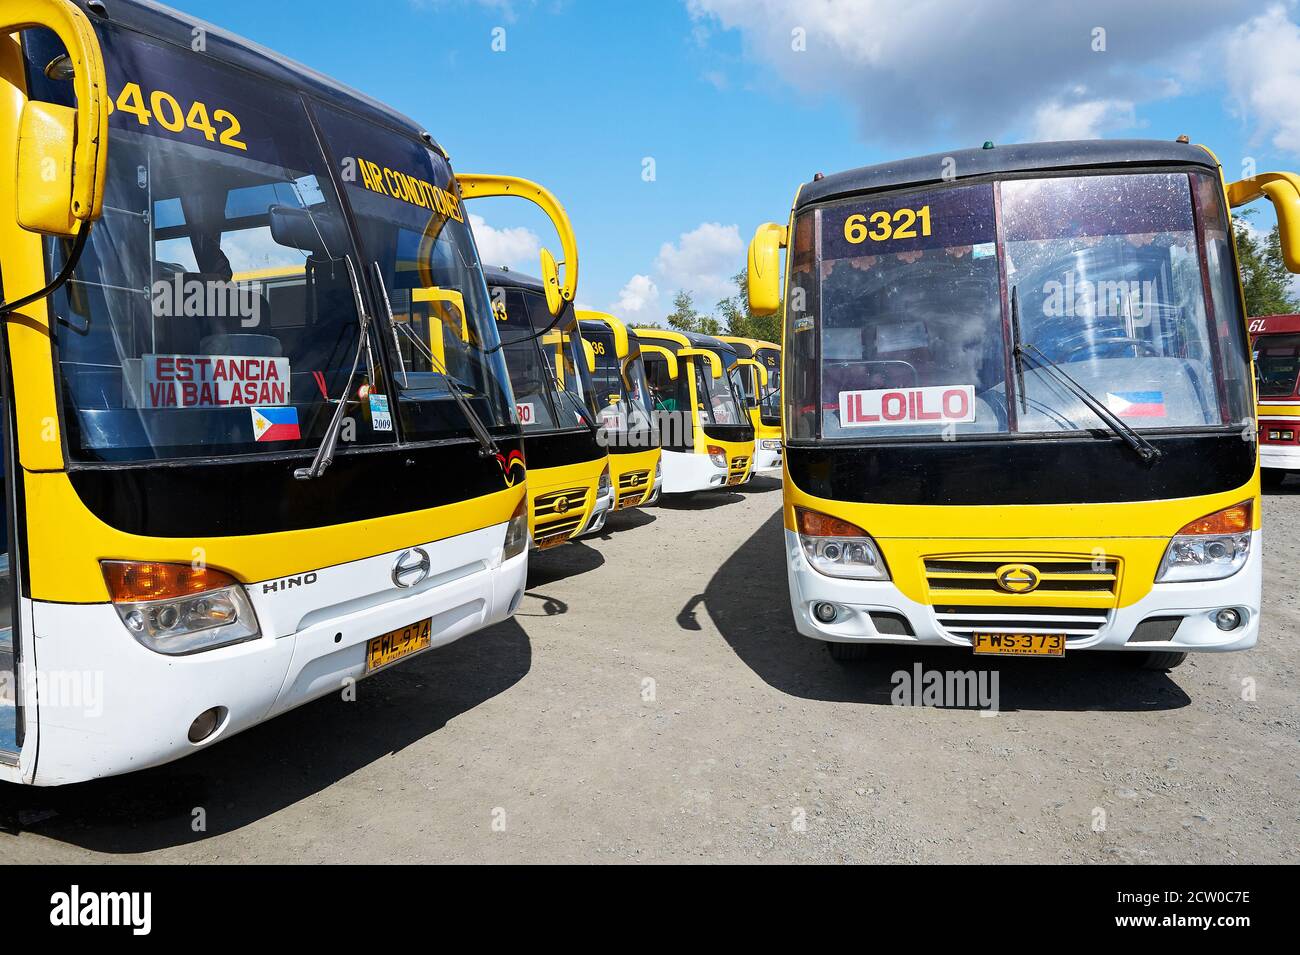 De nombreux bus de couleur jaune de la compagnie de paquebot Ceres se trouvant en ligne au terminal de bus Tagbak à Iloilo City, Panay, Visayas, Philippines Banque D'Images